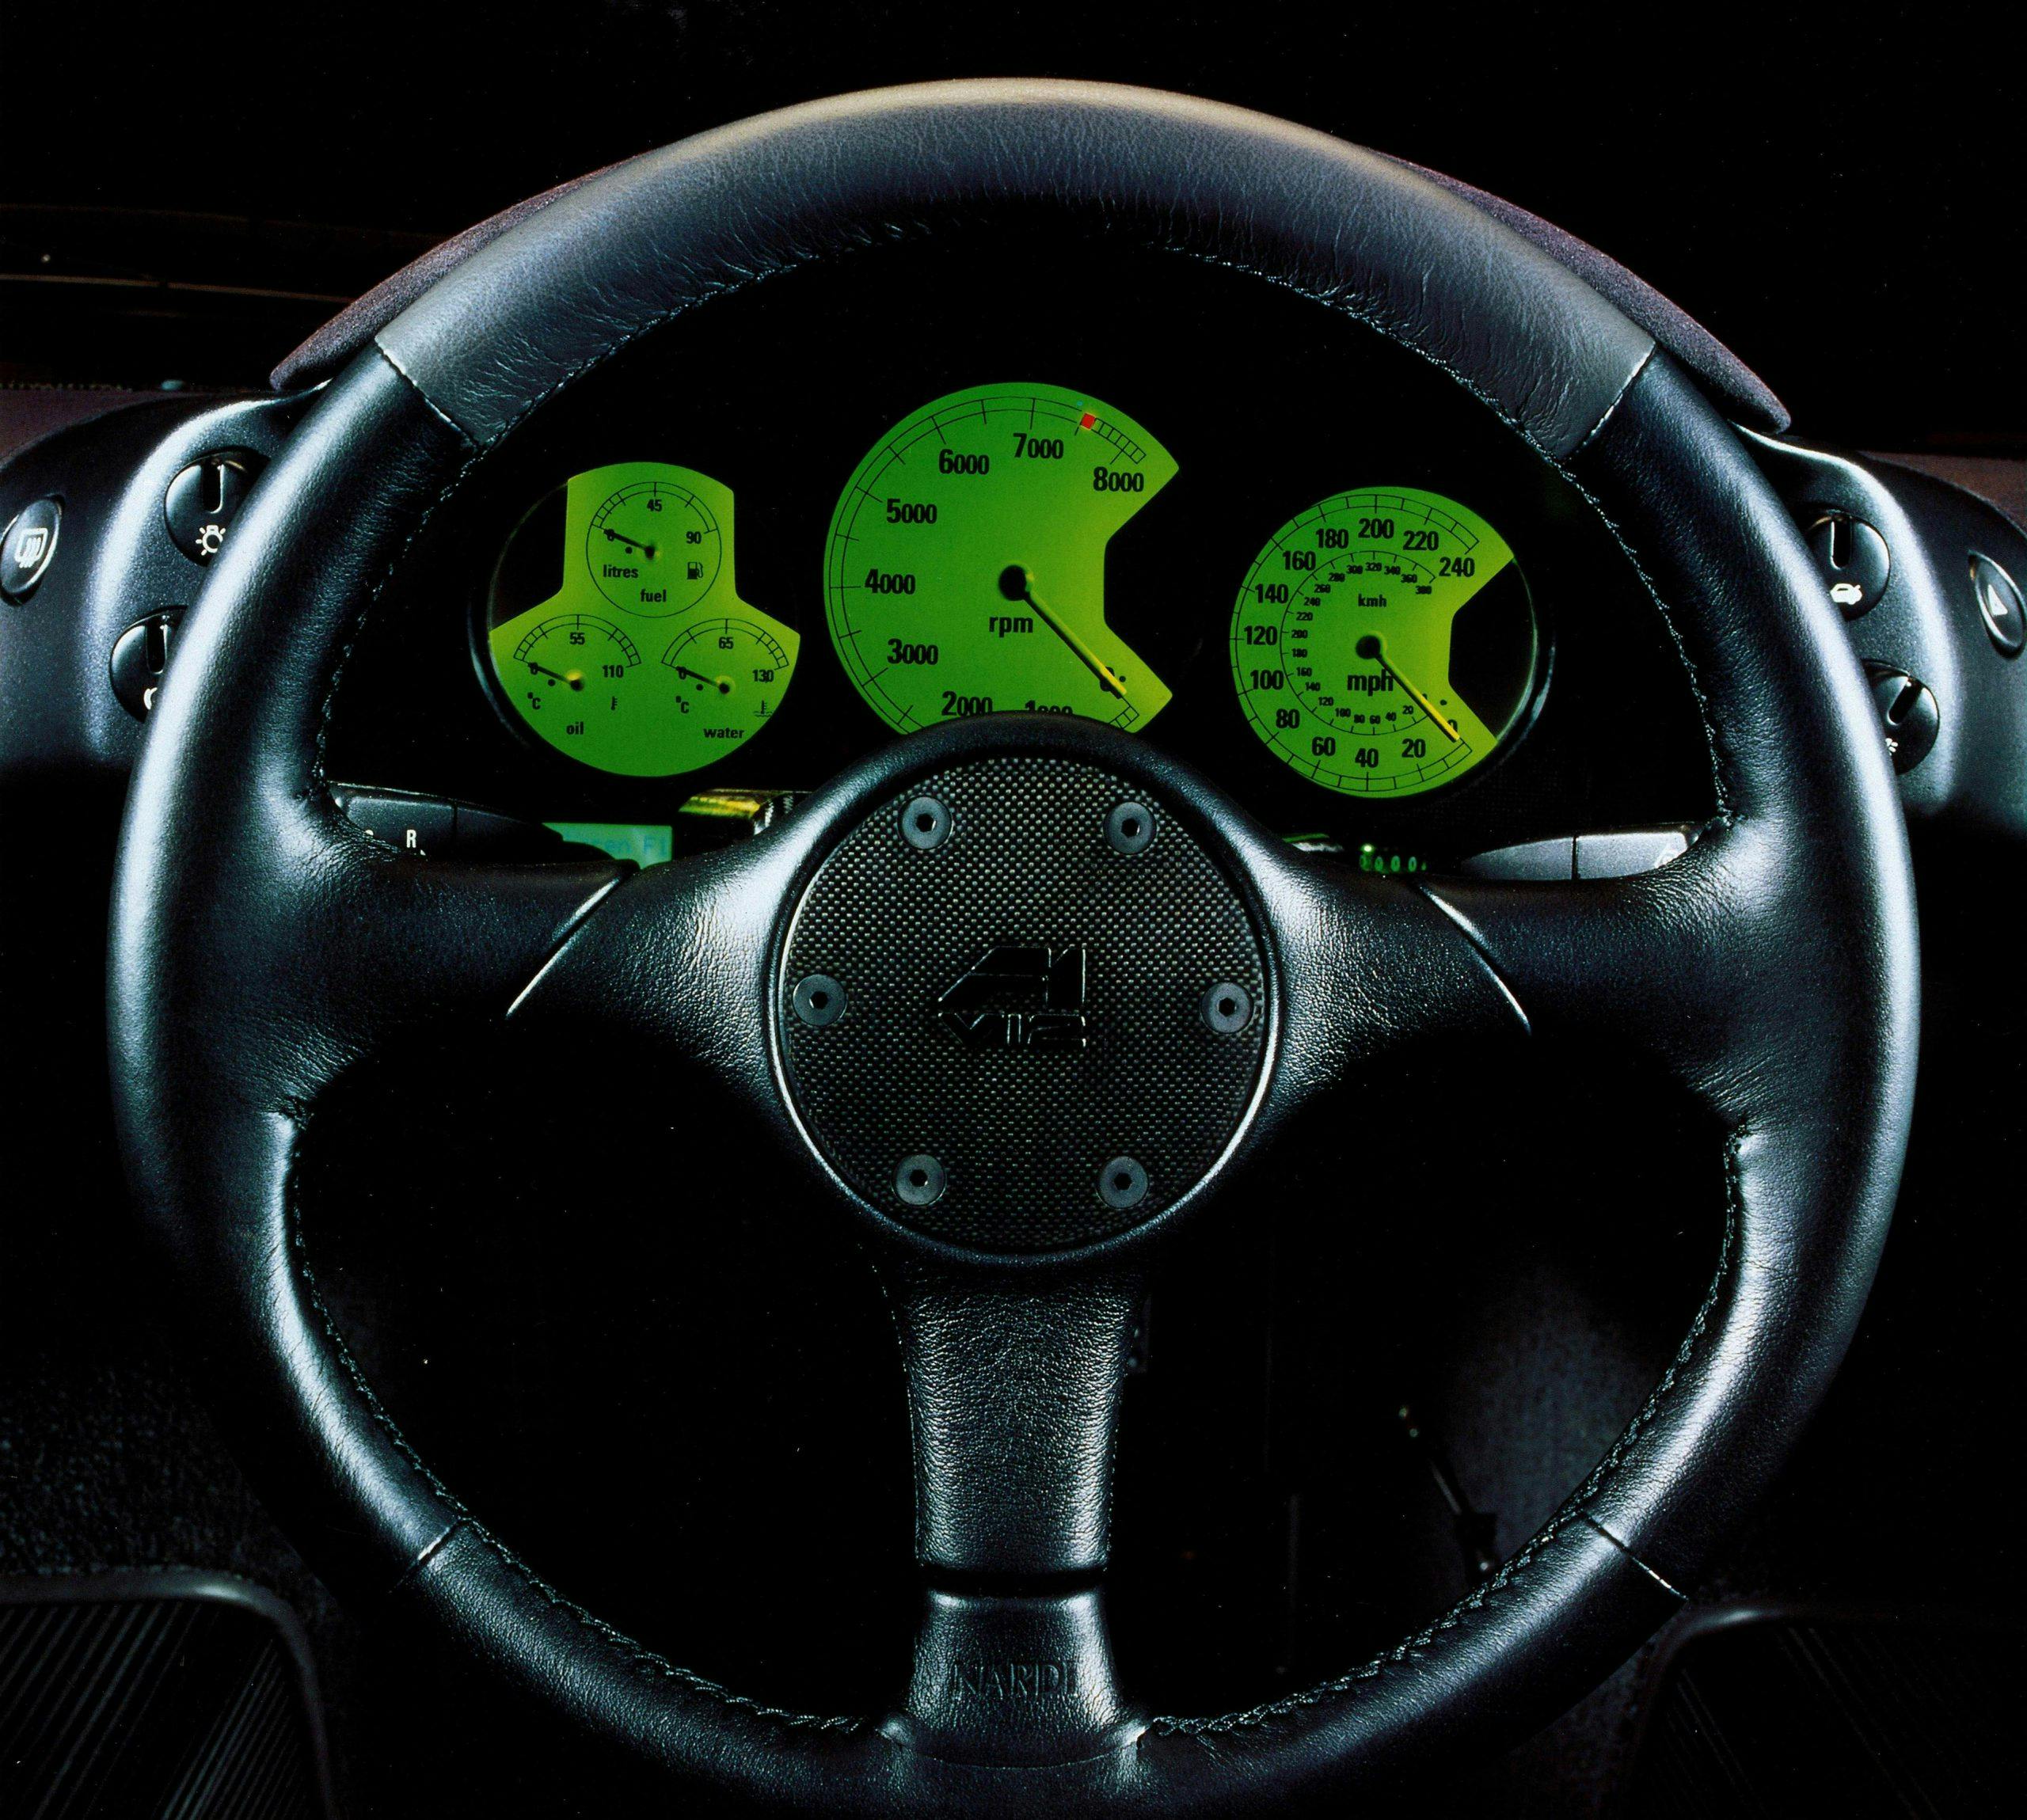 McLaren F1 front steering wheel and gauges